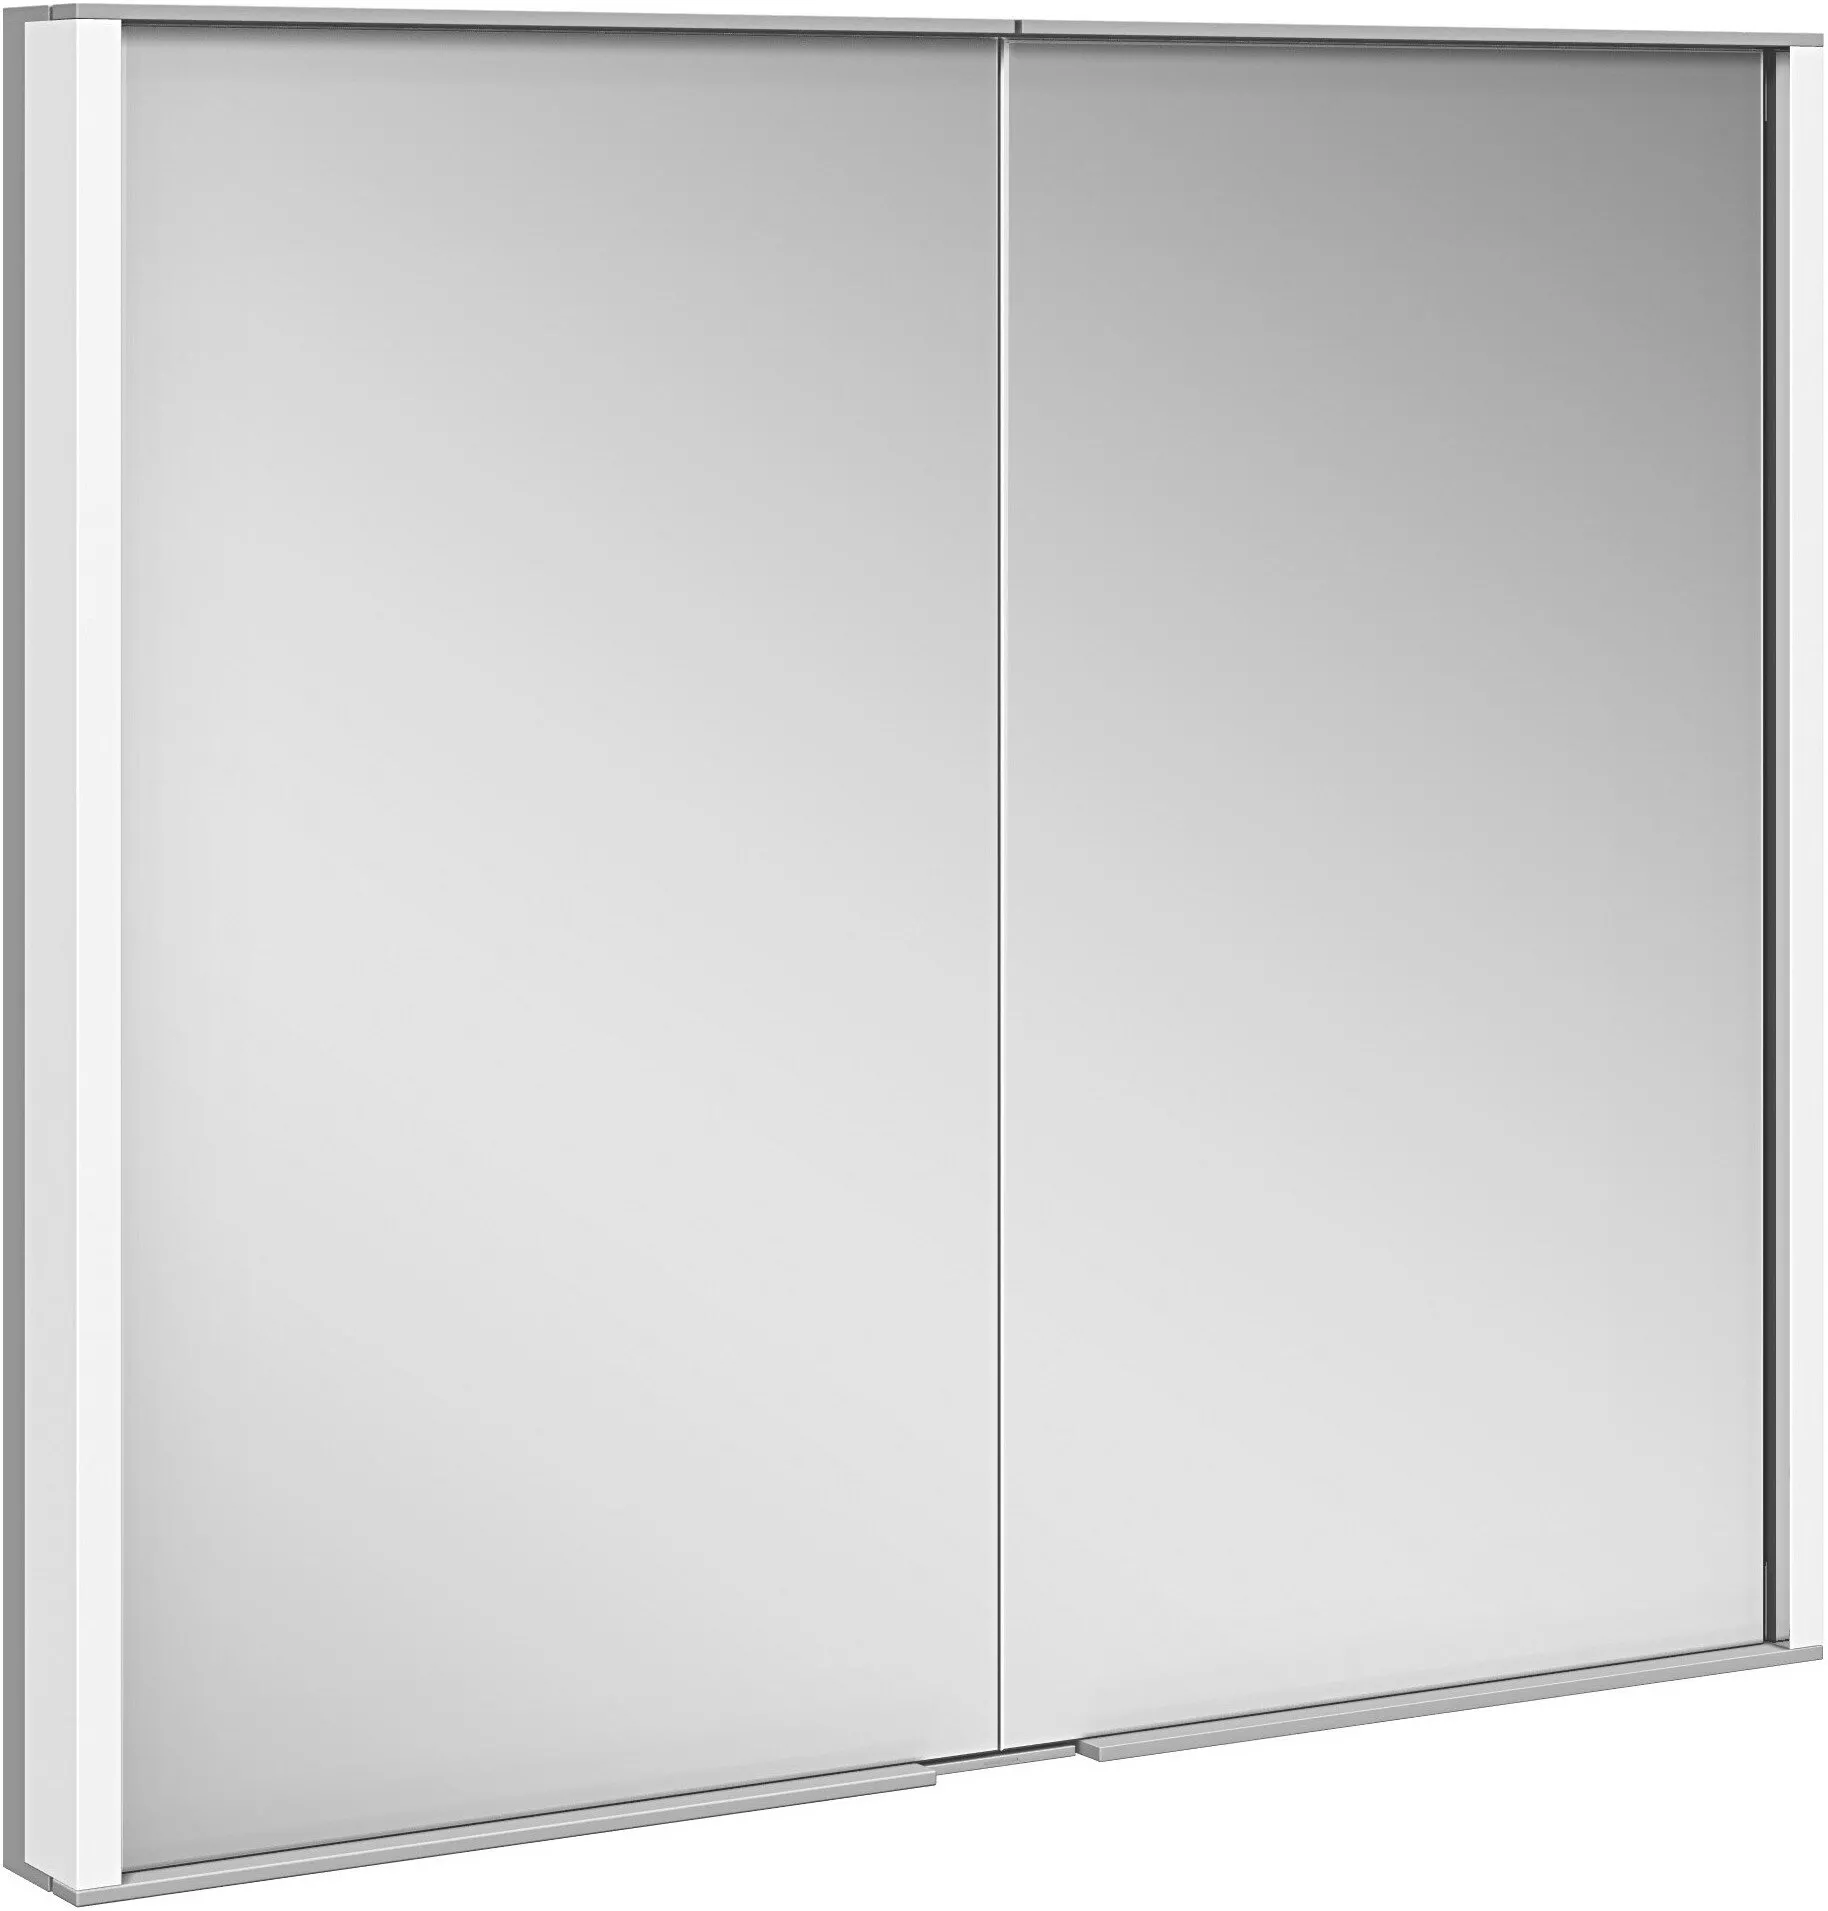 12812171301 зеркальный шкаф( 80 х70 х15) для встраиваемого монтажа две поворотные зеркальные дверцы из двойного хрустального стекла(Royal Match) KEUCO